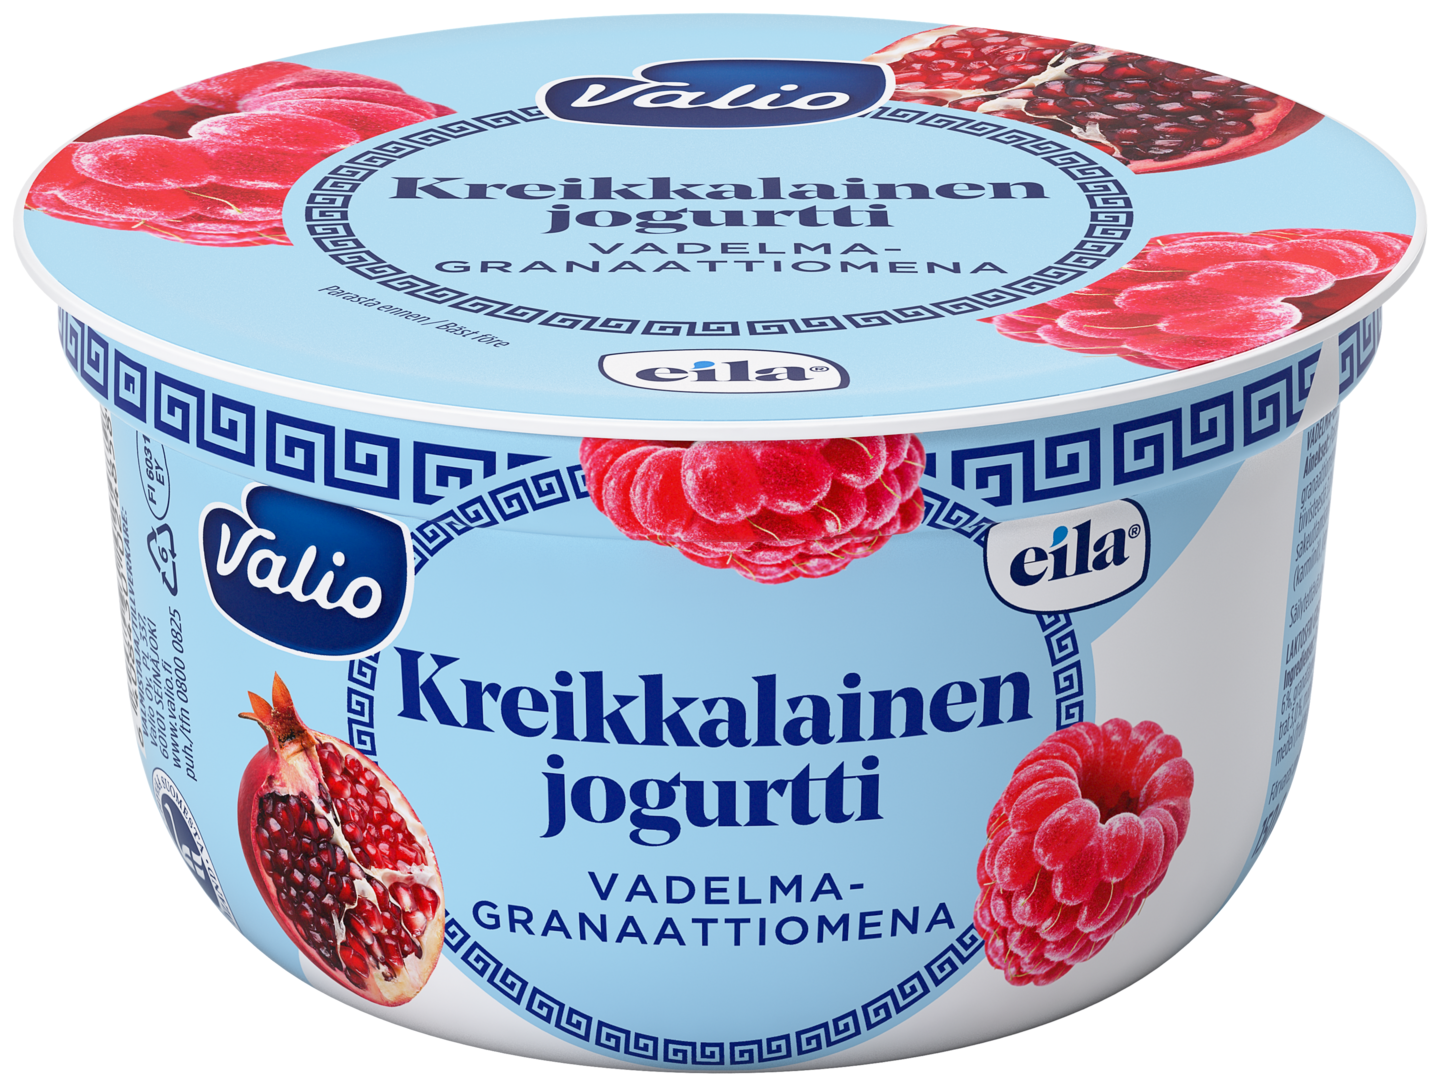 Valio kreikkalainen jogurtti 150g vadelma-granaattiomena laktoositon